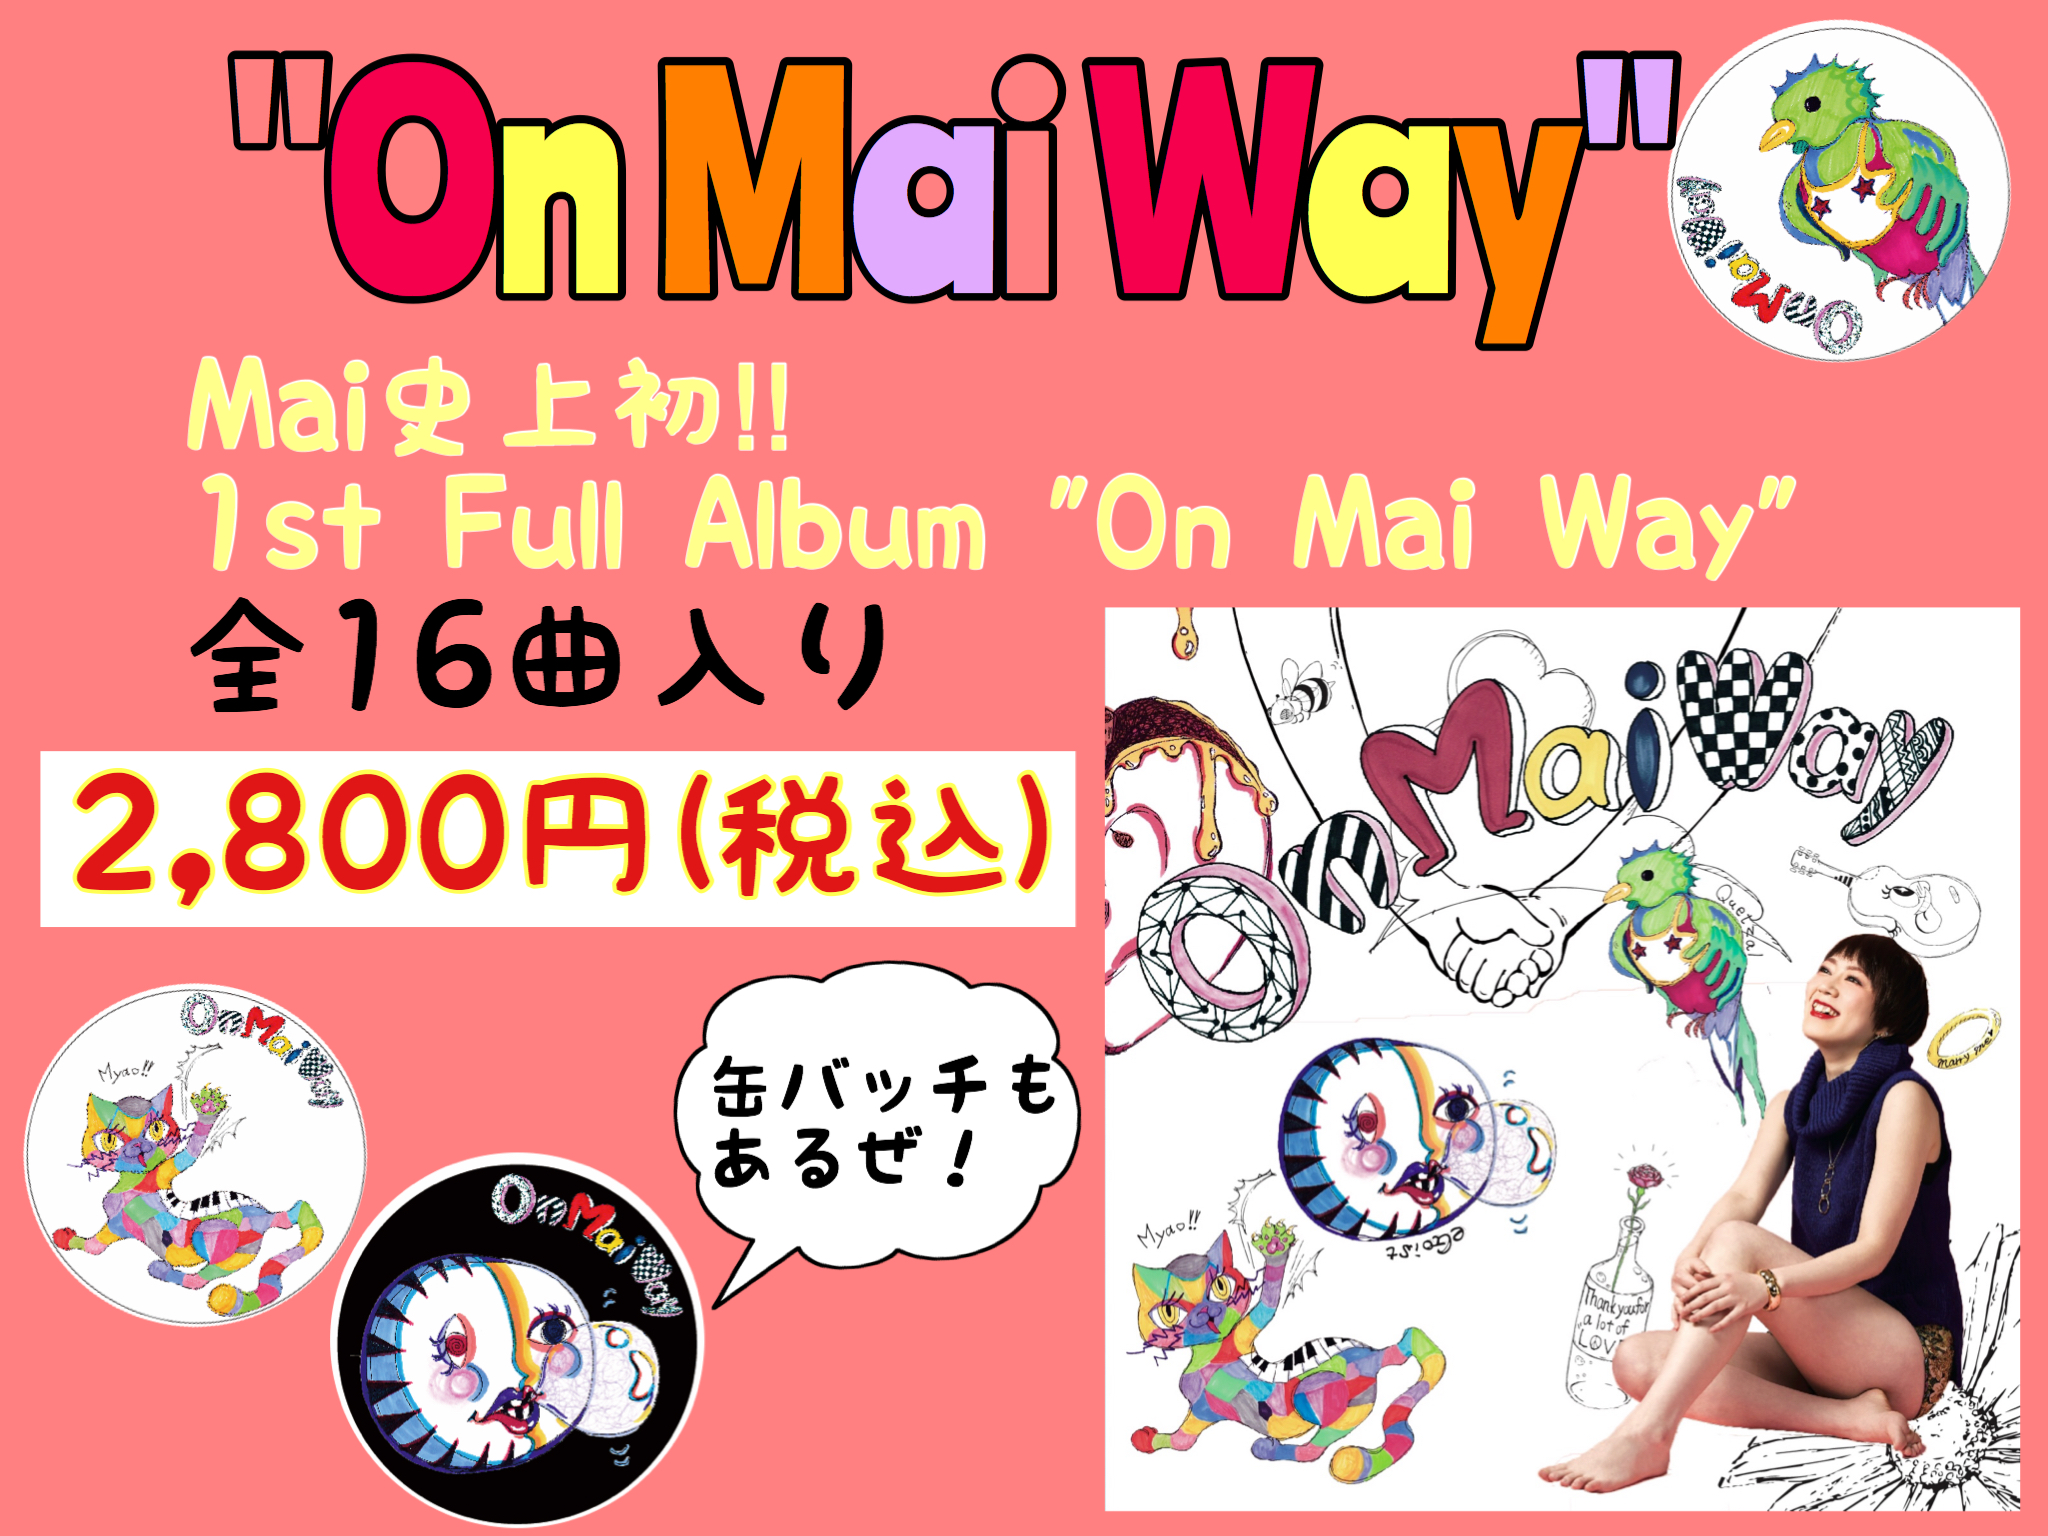 1st Full Album ”On Mai Way” 各ライブ会場にて発売開始!!